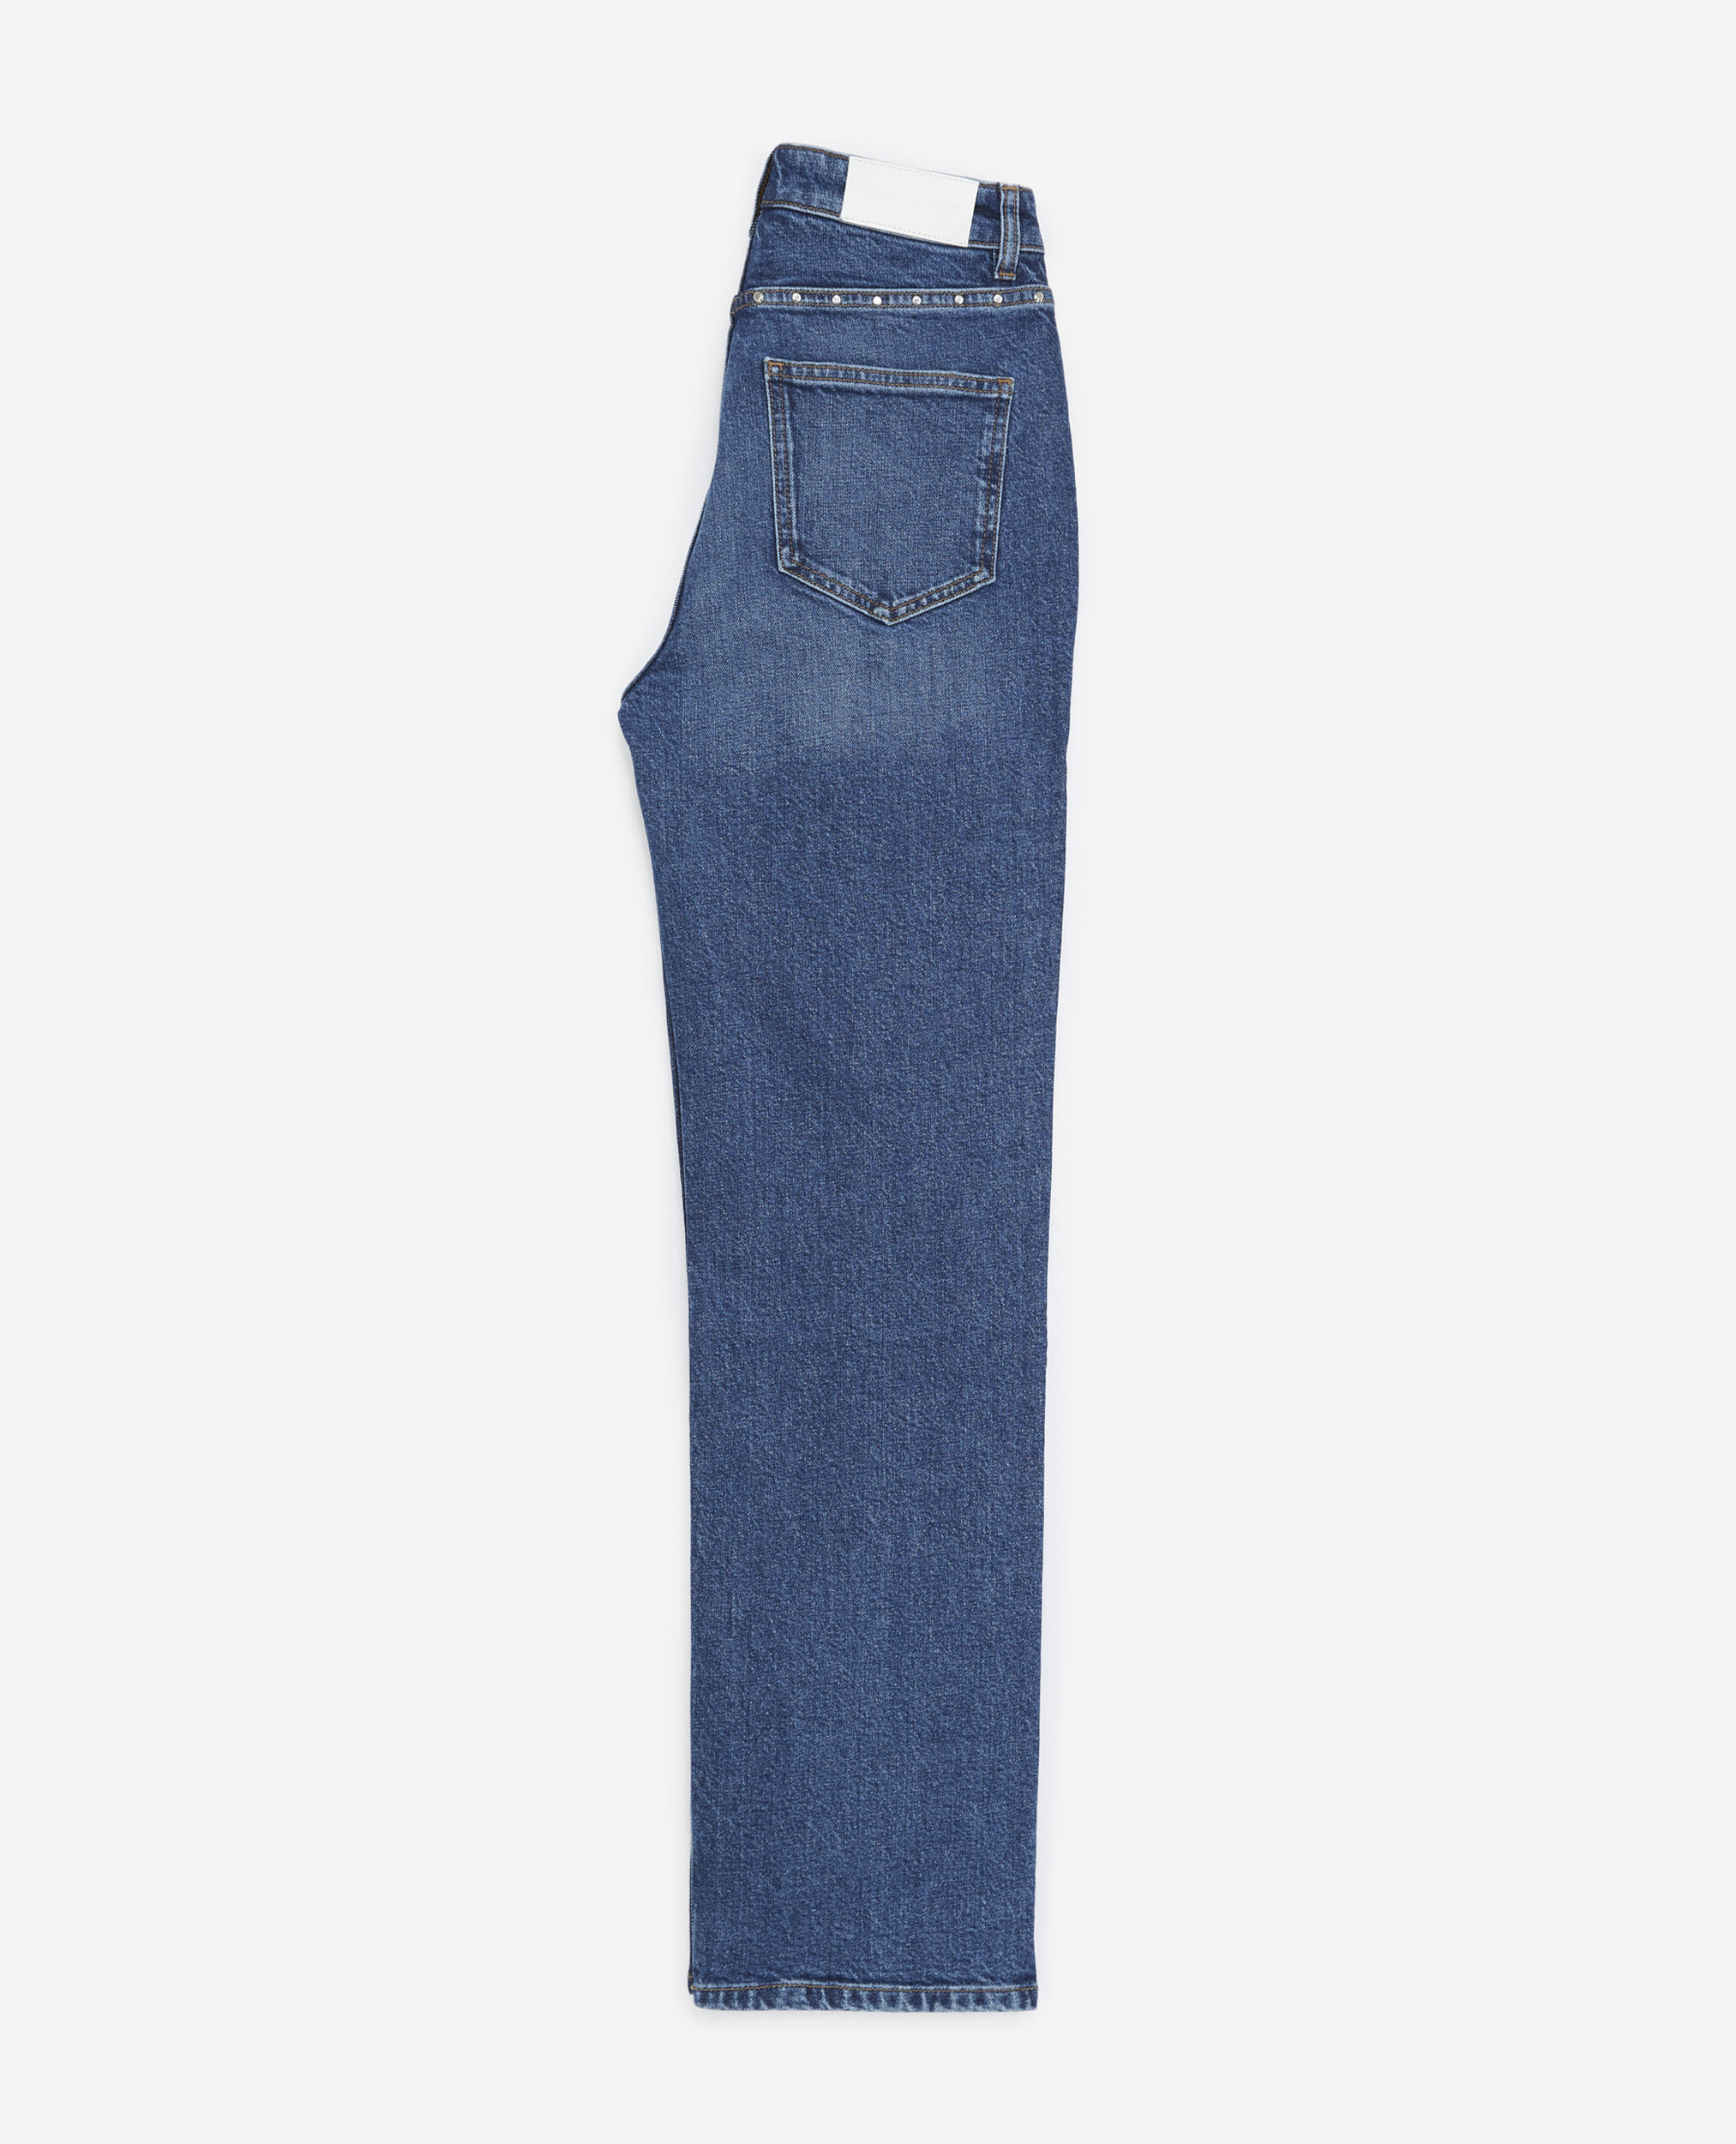 Jeans blau verwaschen Studs silbern, BLUE WASHED, hi-res image number null